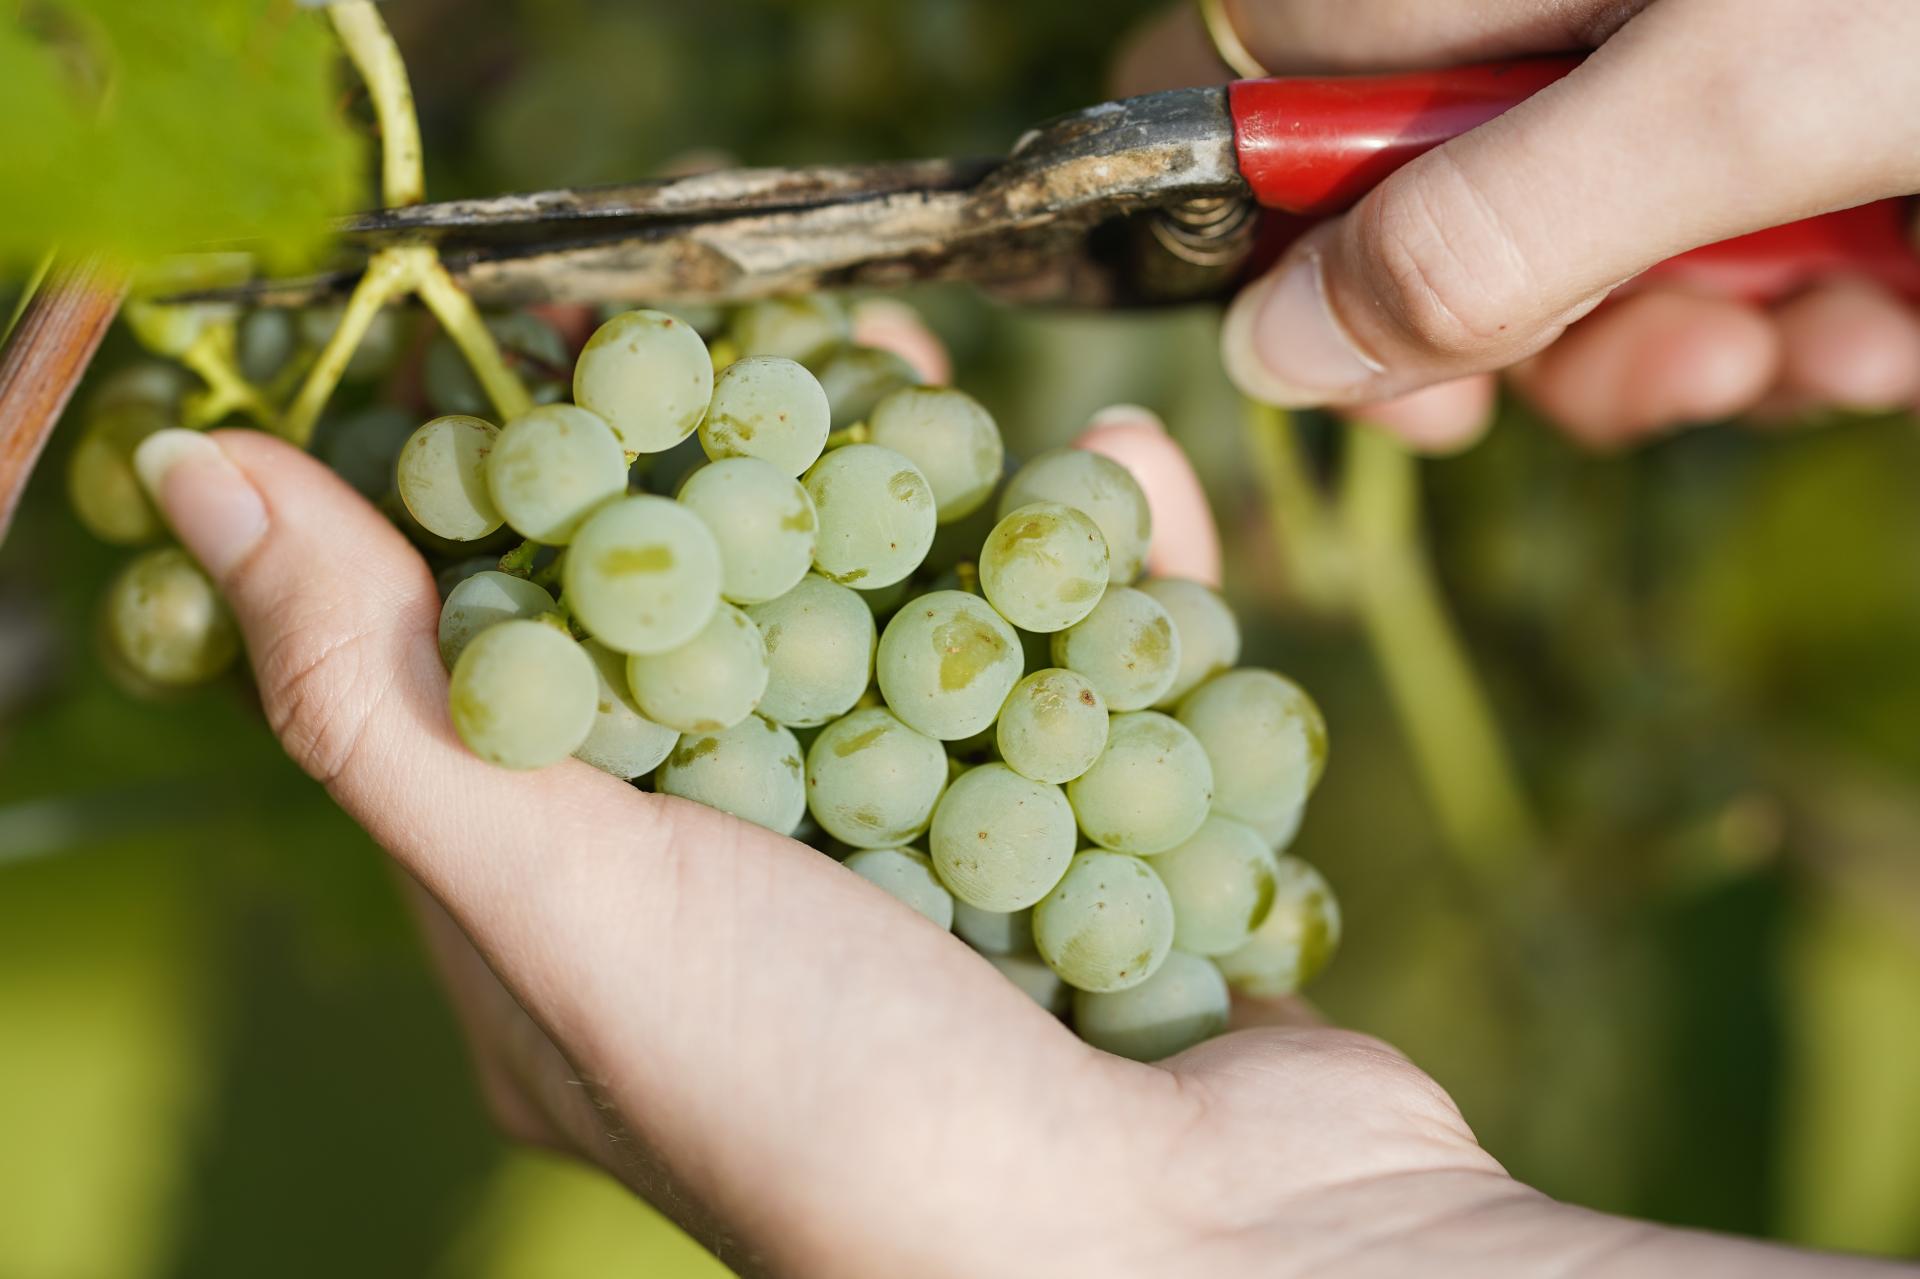 Tohtoročná úroda hrozna bude podľa vinárov nižšia o viac než tretinu, no kvalita by mohla byť vysoká